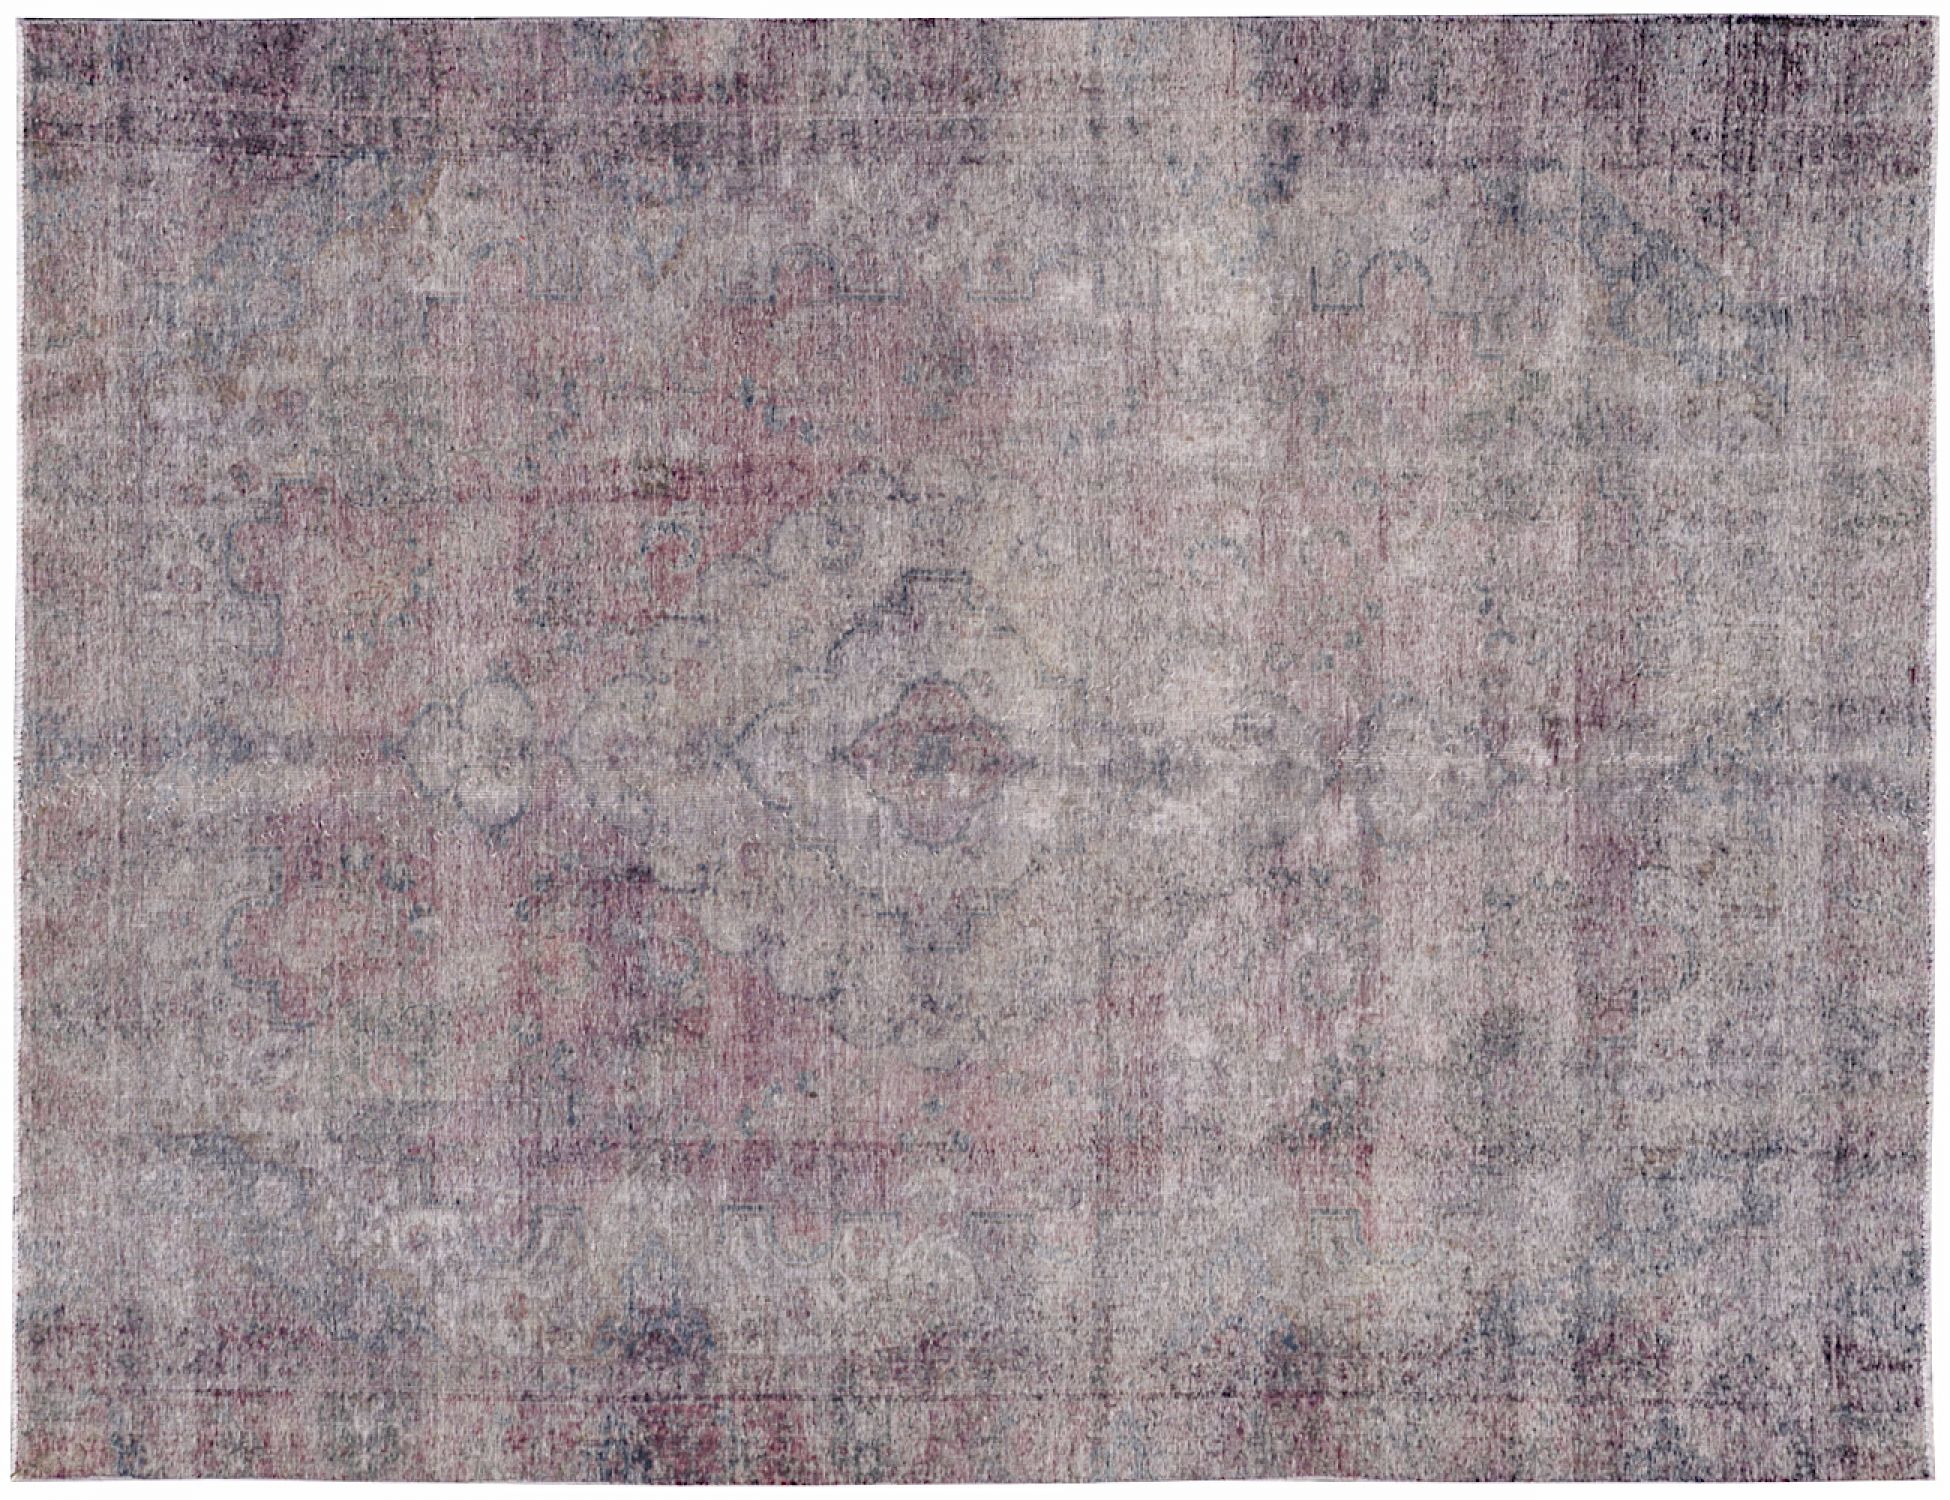  Vintage Tapis  grise <br/>367 x 257 cm